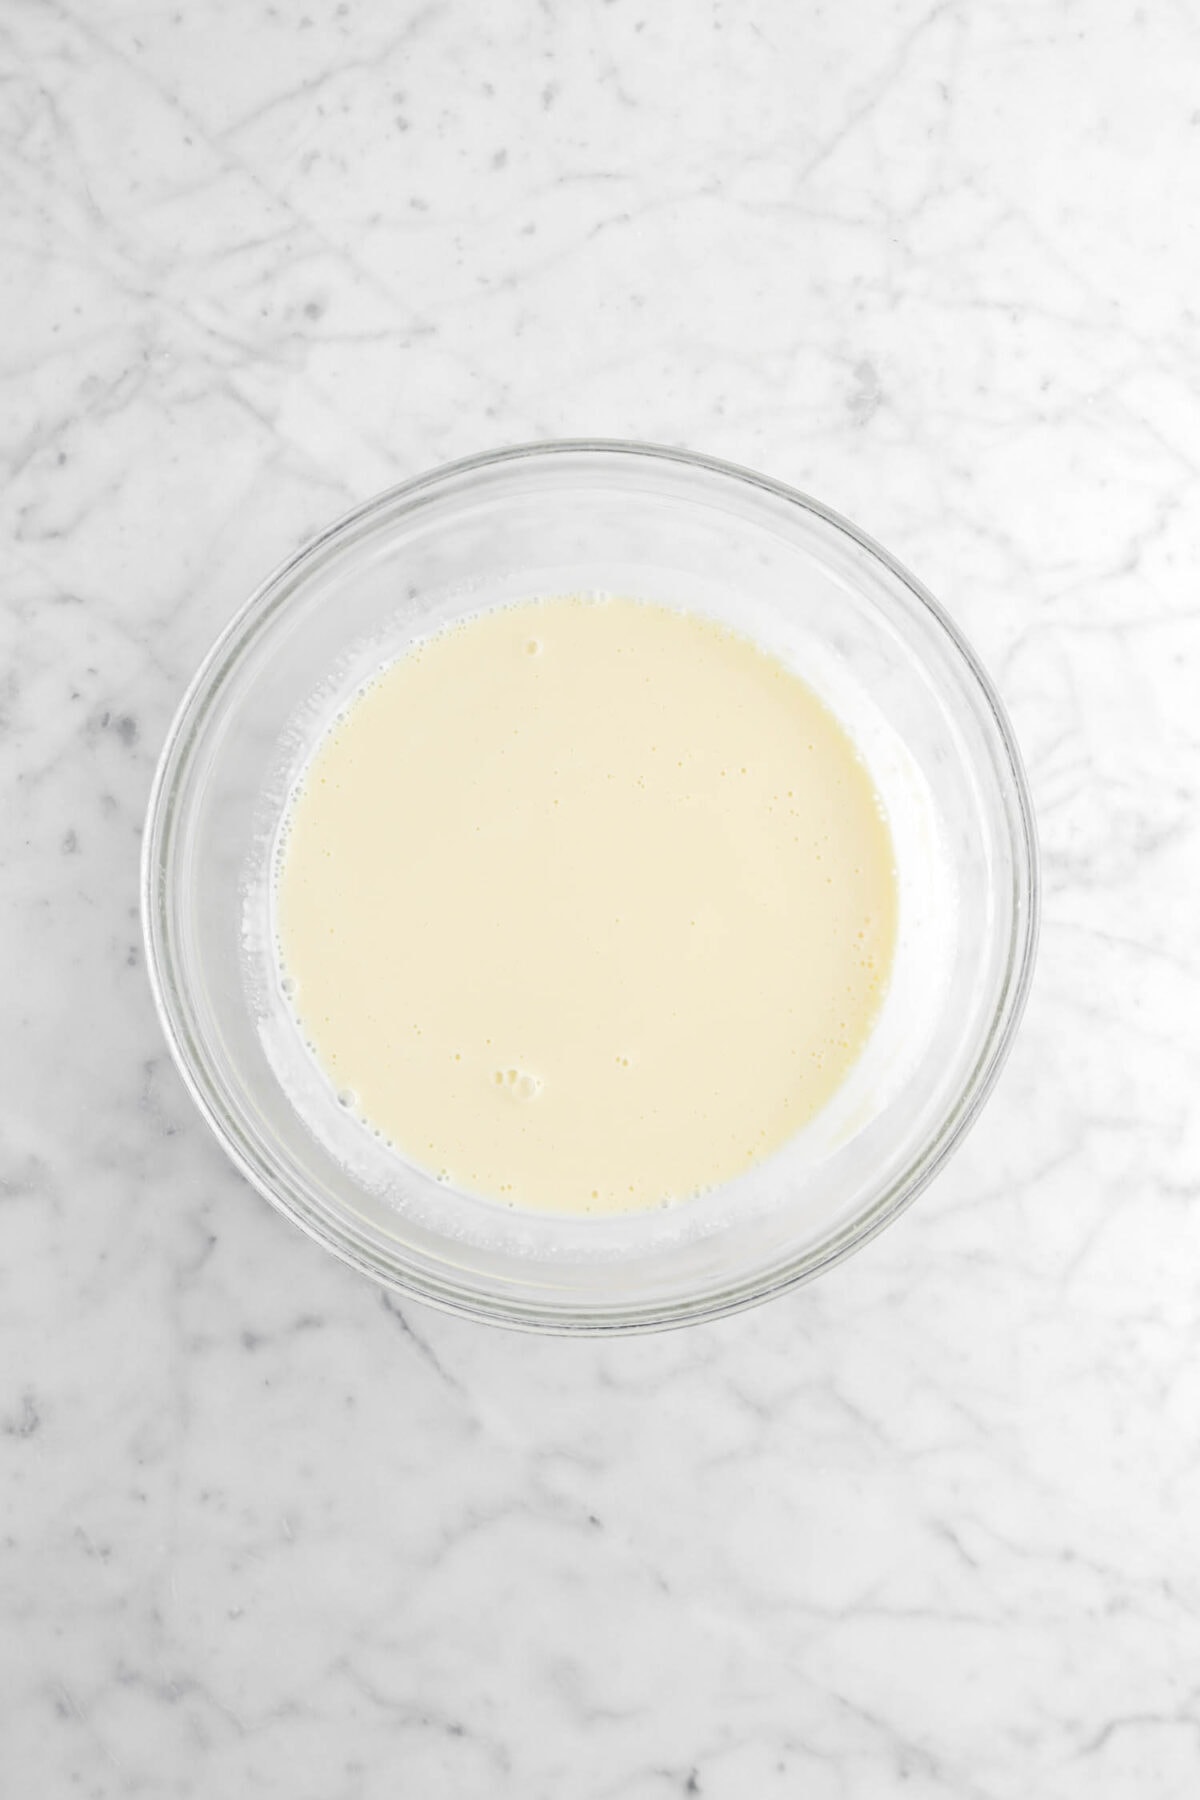 vanilla custard in glass bowl on marble surface